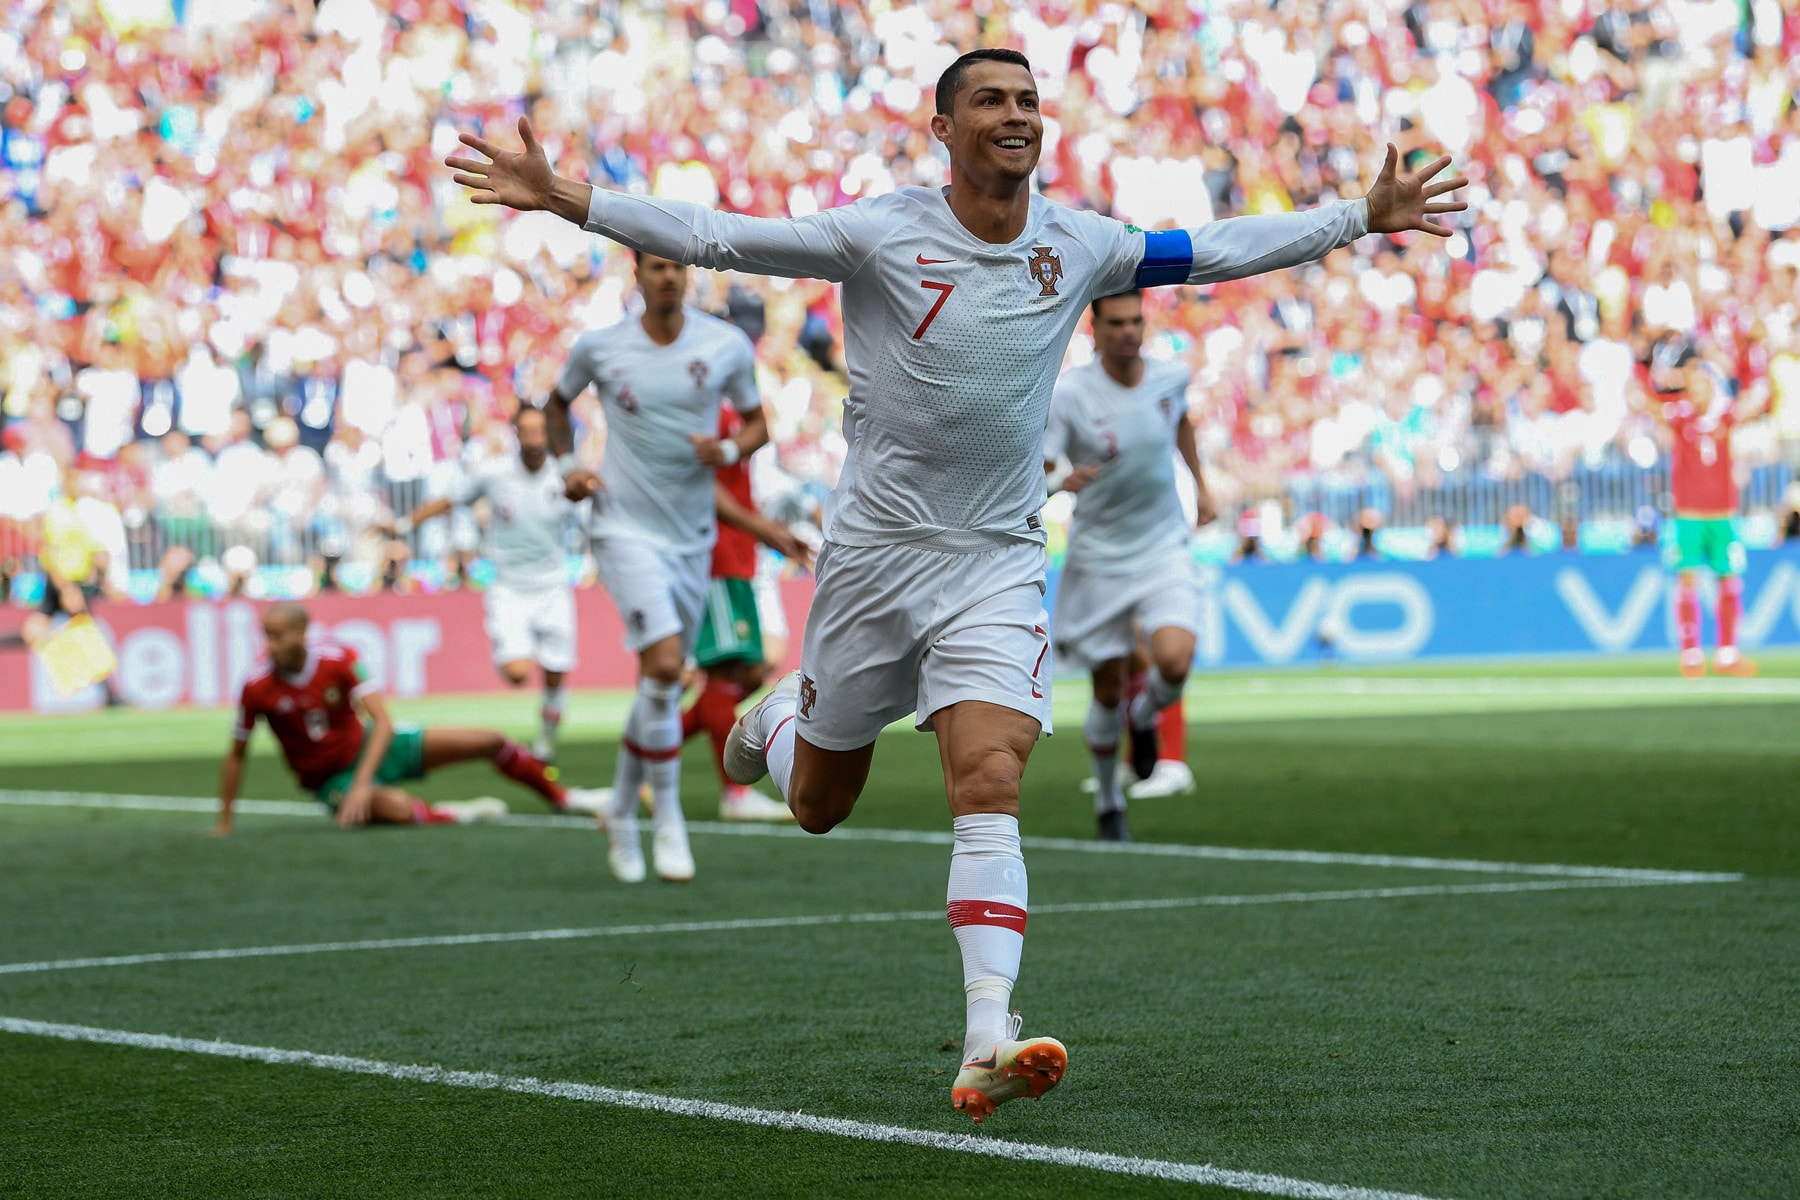 2018 世界盃 − Cristiano Ronaldo 擦新紀錄成為歐洲史上最佳神射手